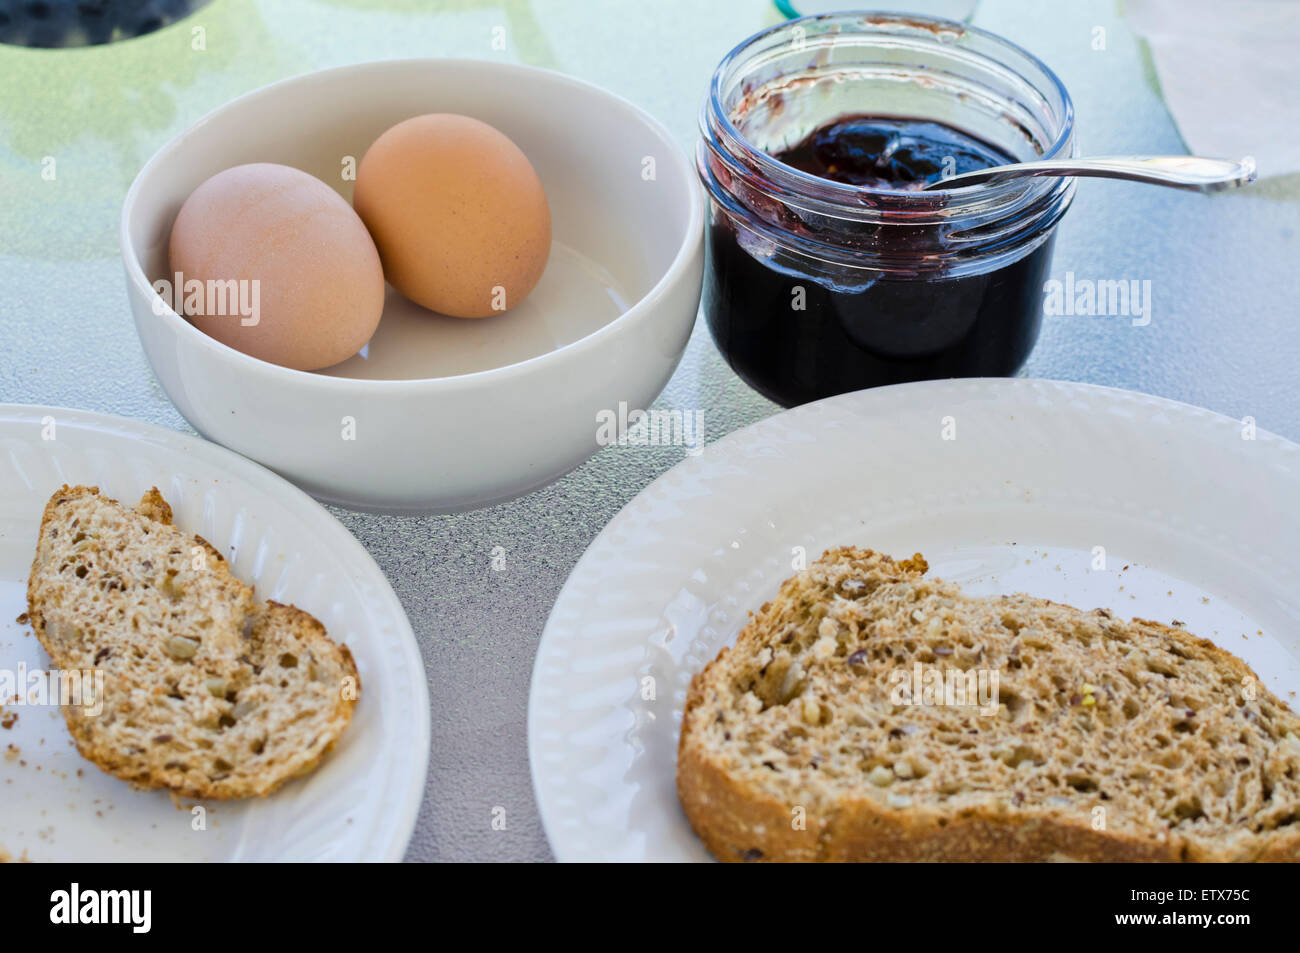 Desayuno sencillo con huevos hervidos, una rebanada de tostadas multigrano y mermelada casera. Foto de stock